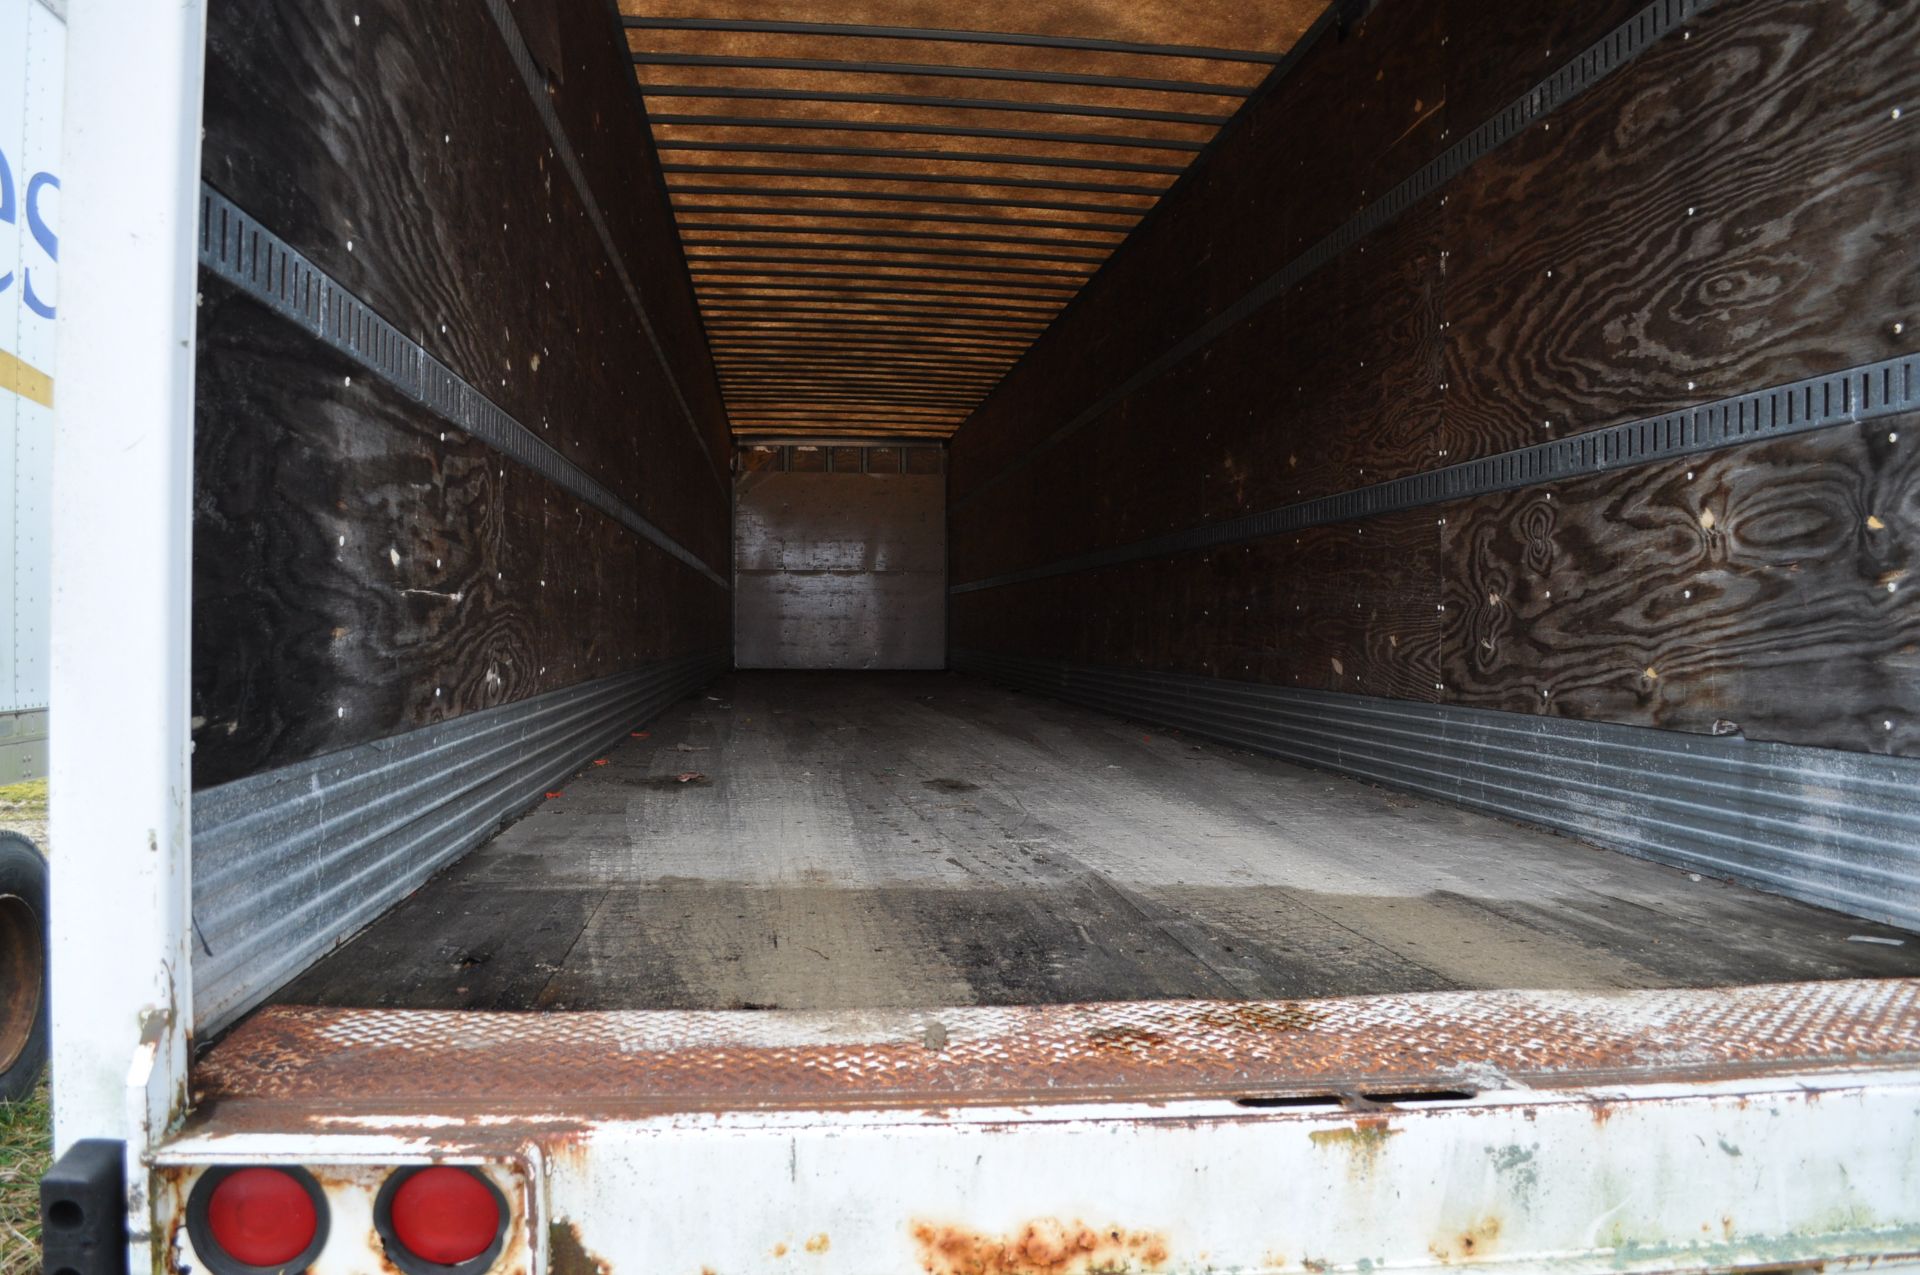 53’ van trailer, tandem axle, roll up doors, NO TITLE - Image 6 of 11